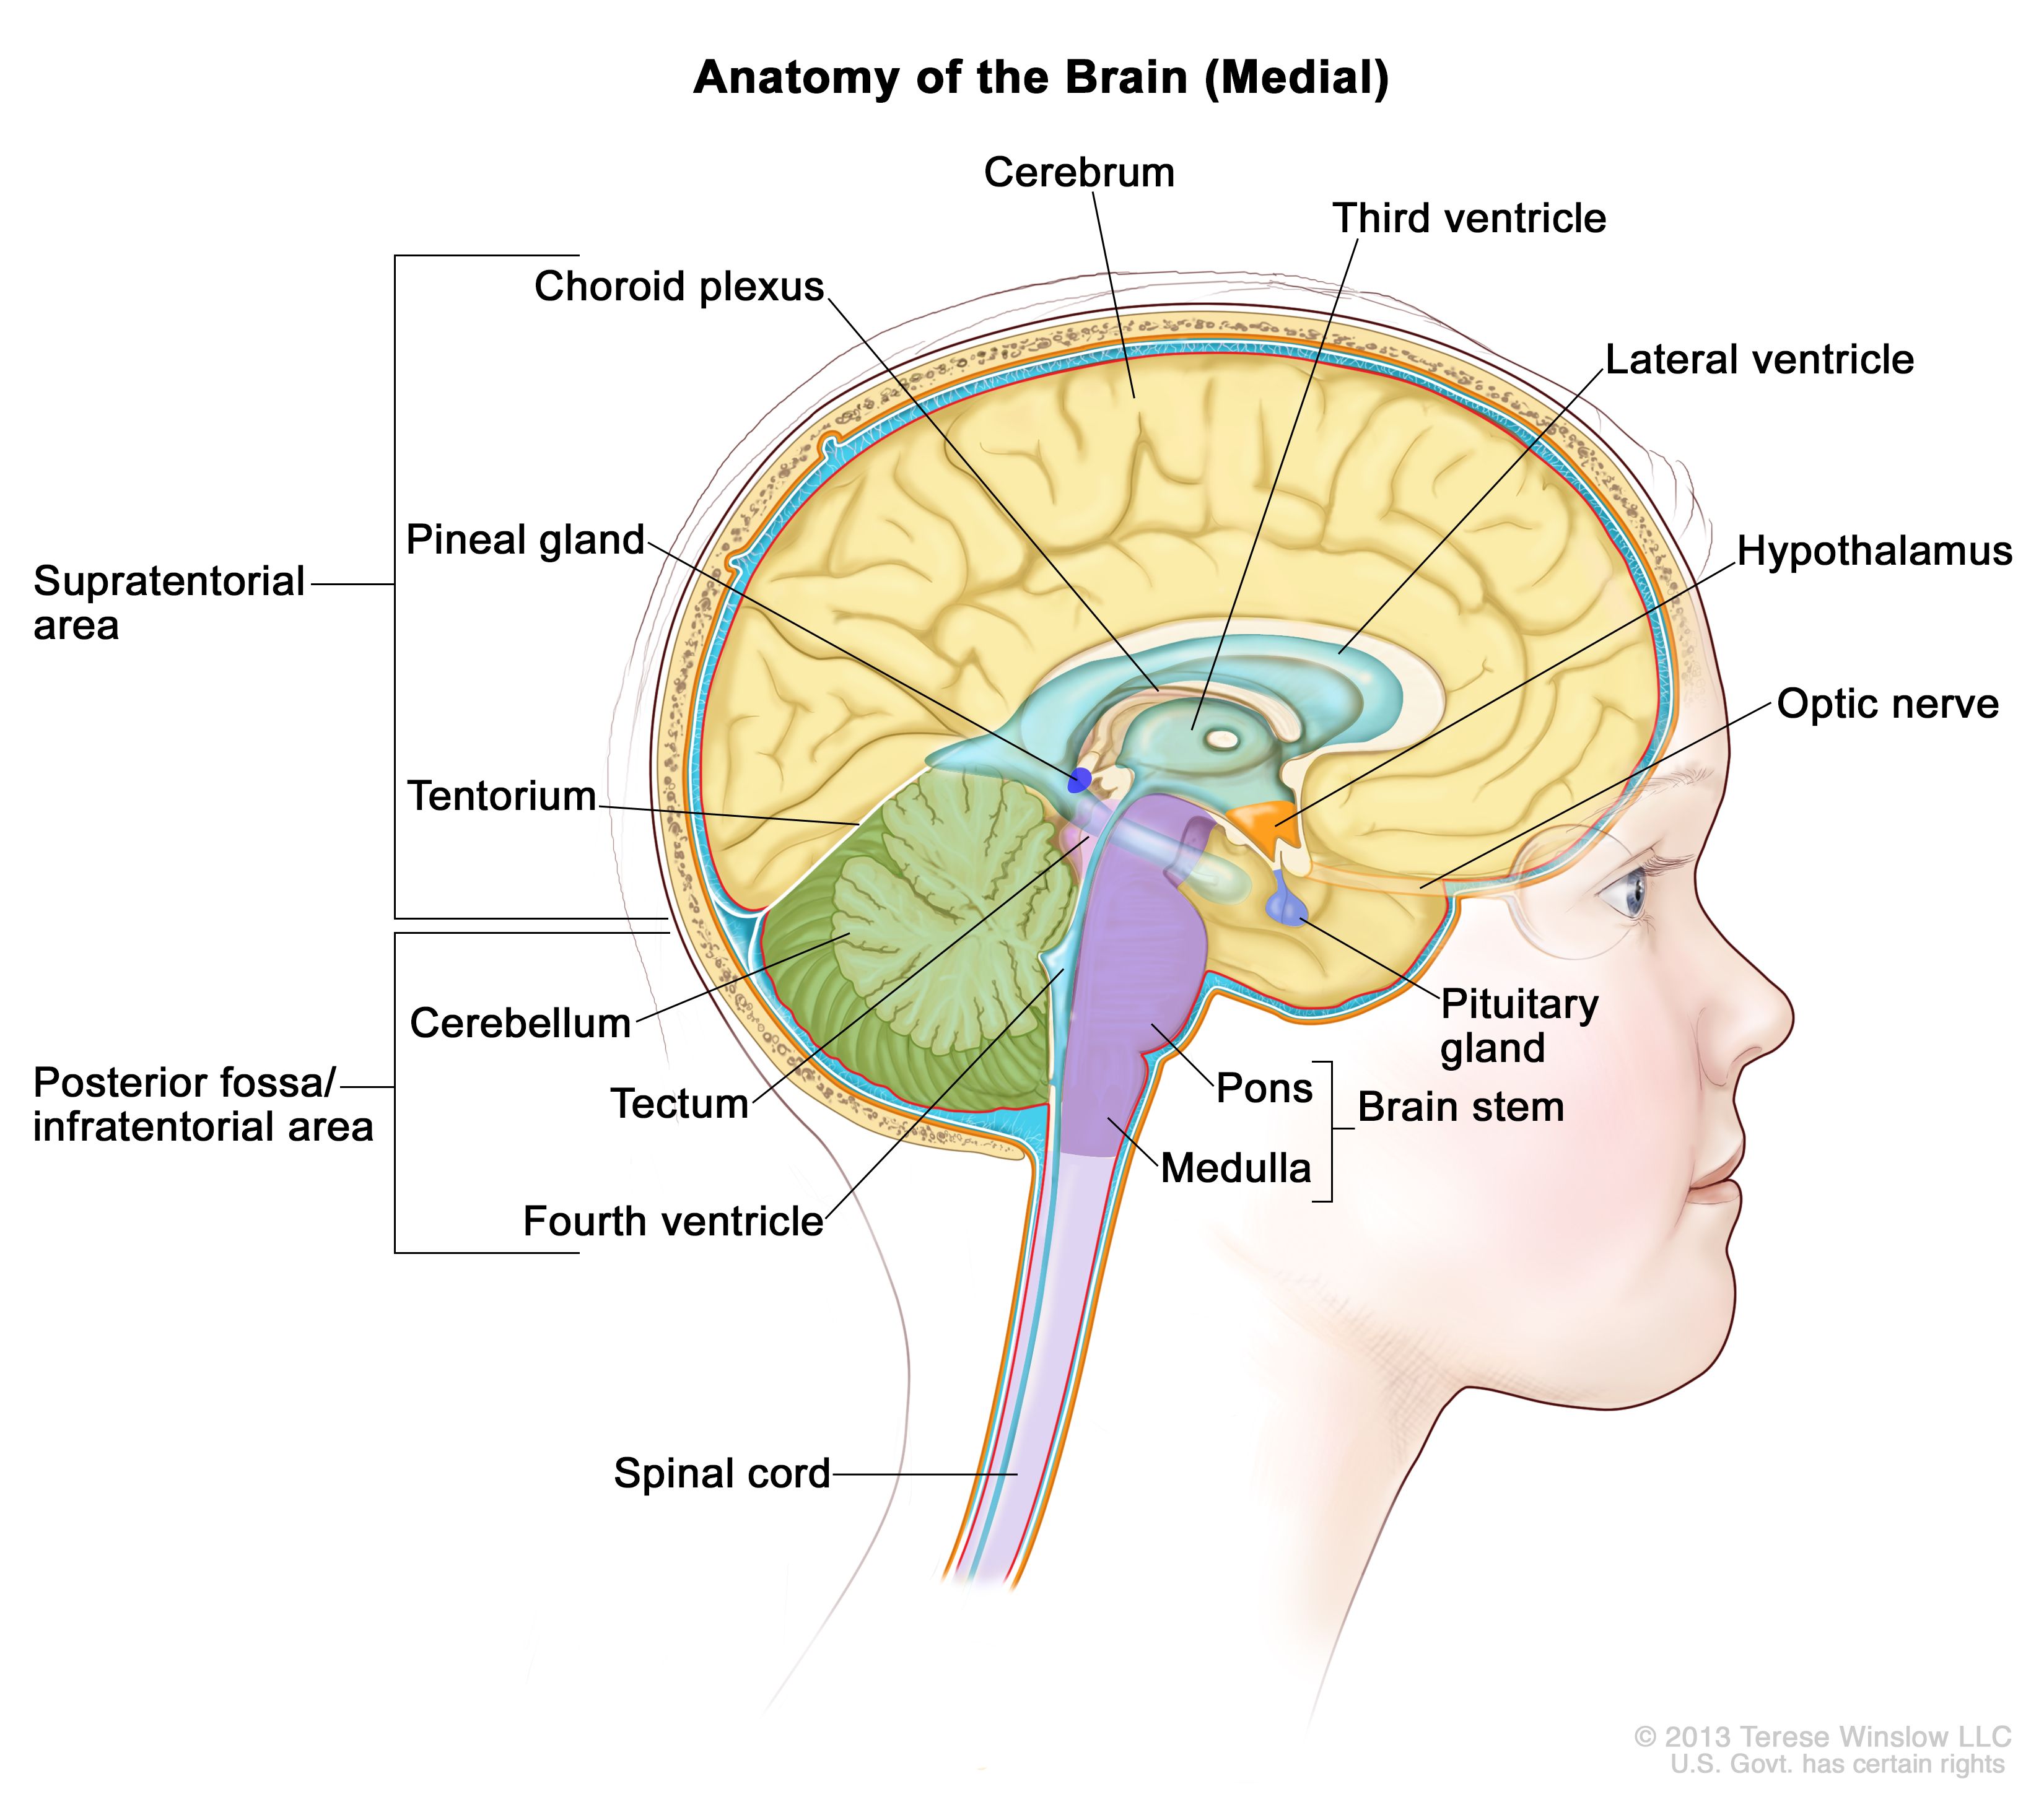 脳の内部図：テント上領域（脳の上部）および後頭蓋窩/テント下領域（脳の下部後方）を示す。テント上領域には大脳、側脳室、第三脳室、脈絡叢、視床下部、松果体、下垂体、視神経が含まれる。後頭蓋窩/テント下領域には小脳、視蓋、第四脳室、脳幹（橋および延髄）が含まれる。小脳テントおよび脊髄も示す。